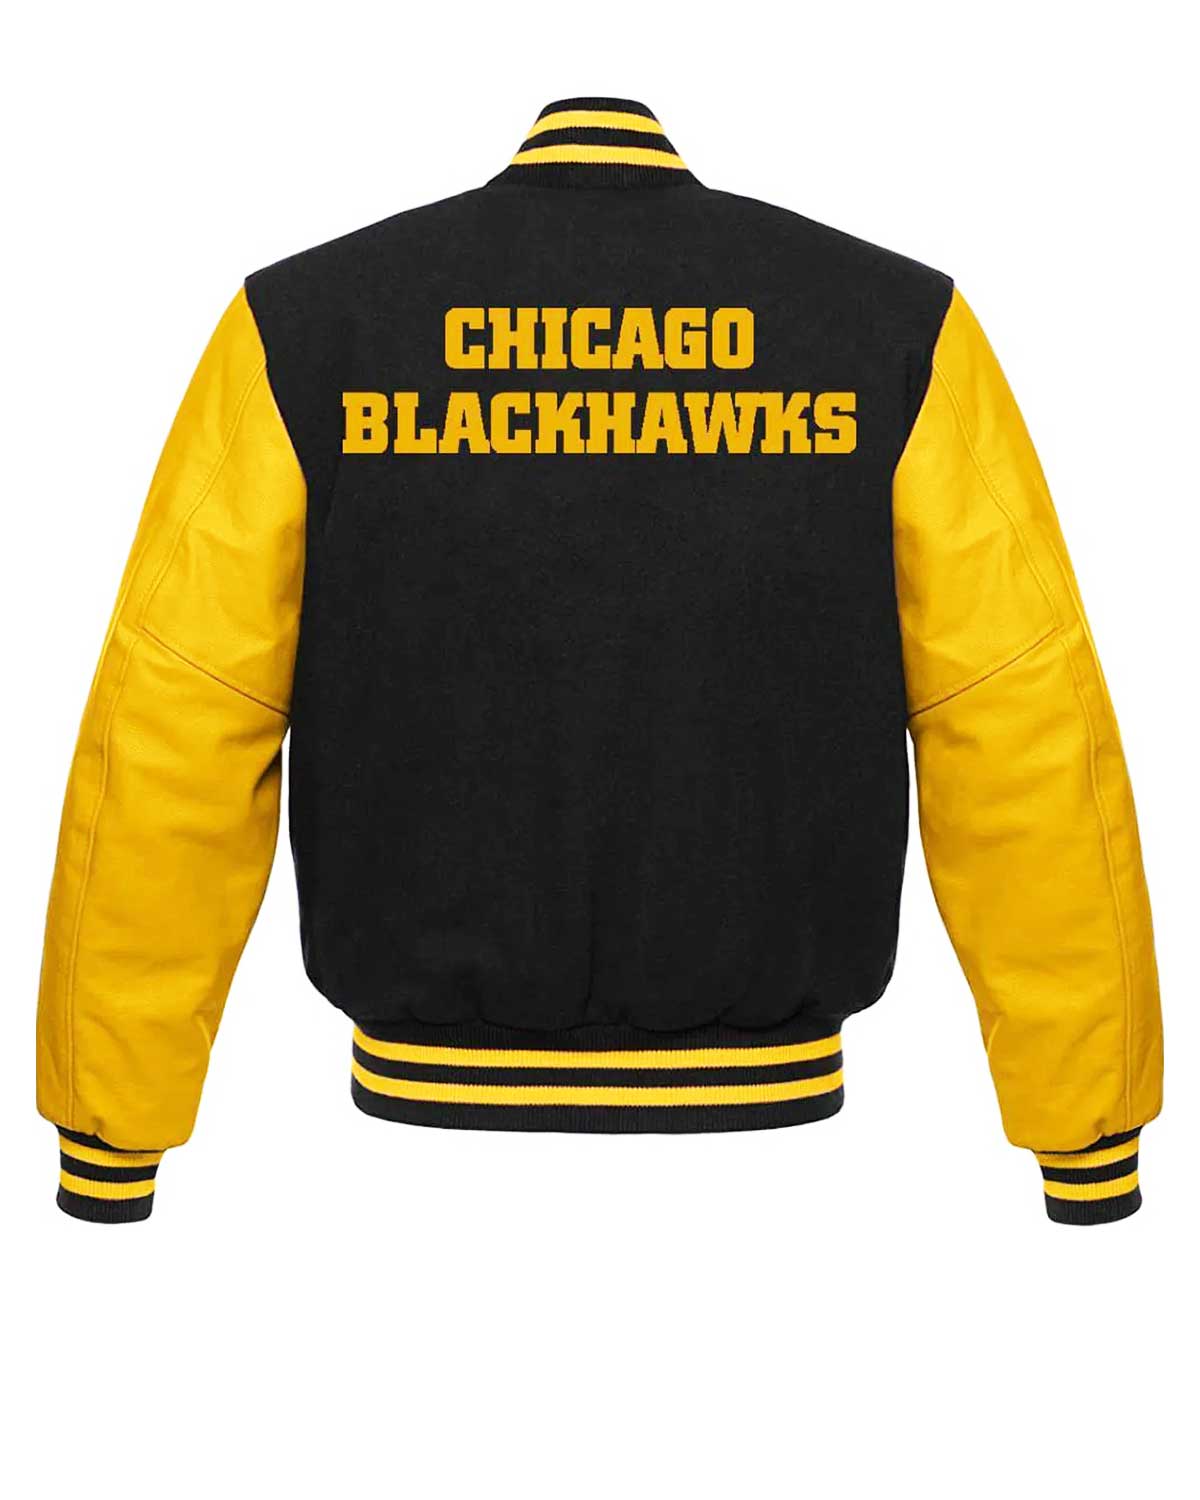 NHL Chicago Blackhawks Black And Yellow Wool Varsity Jacket